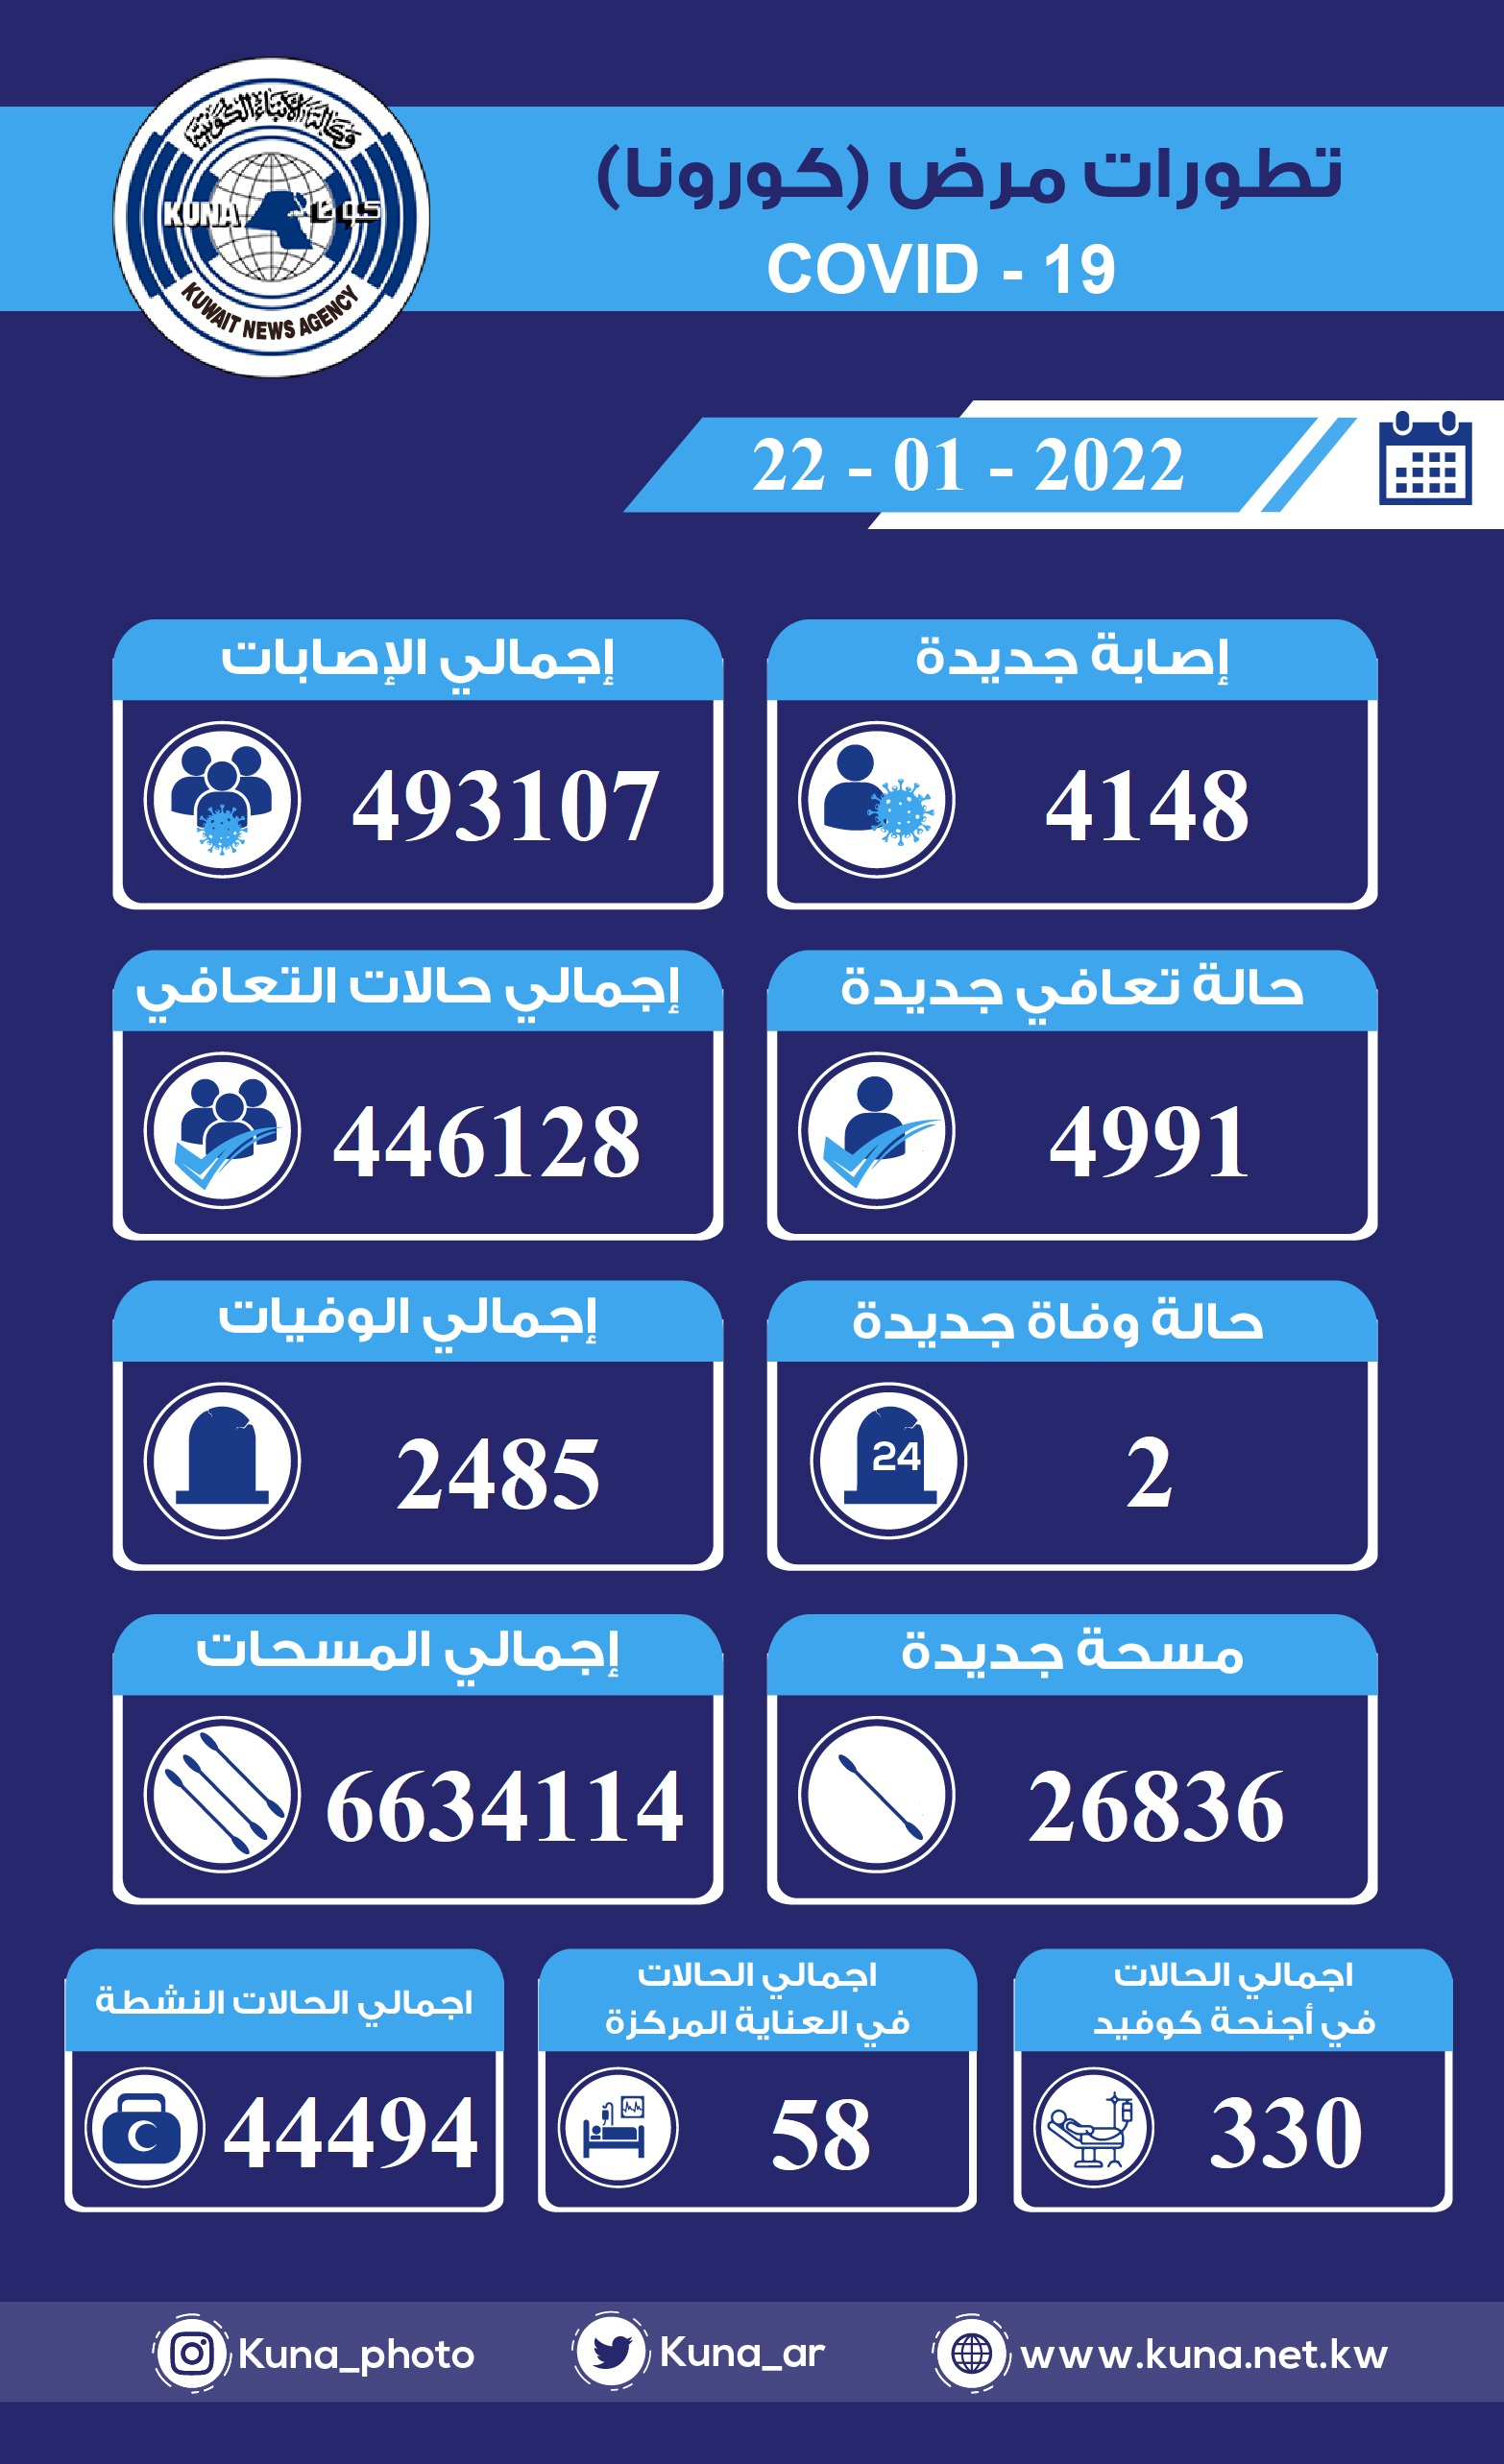 (الصحة) الكويتية: 4148 إصابة جديدة ب(كورونا) وشفاء 4991 وتسجيل حالتي وفاة خلال الساعات ال24 الماضية